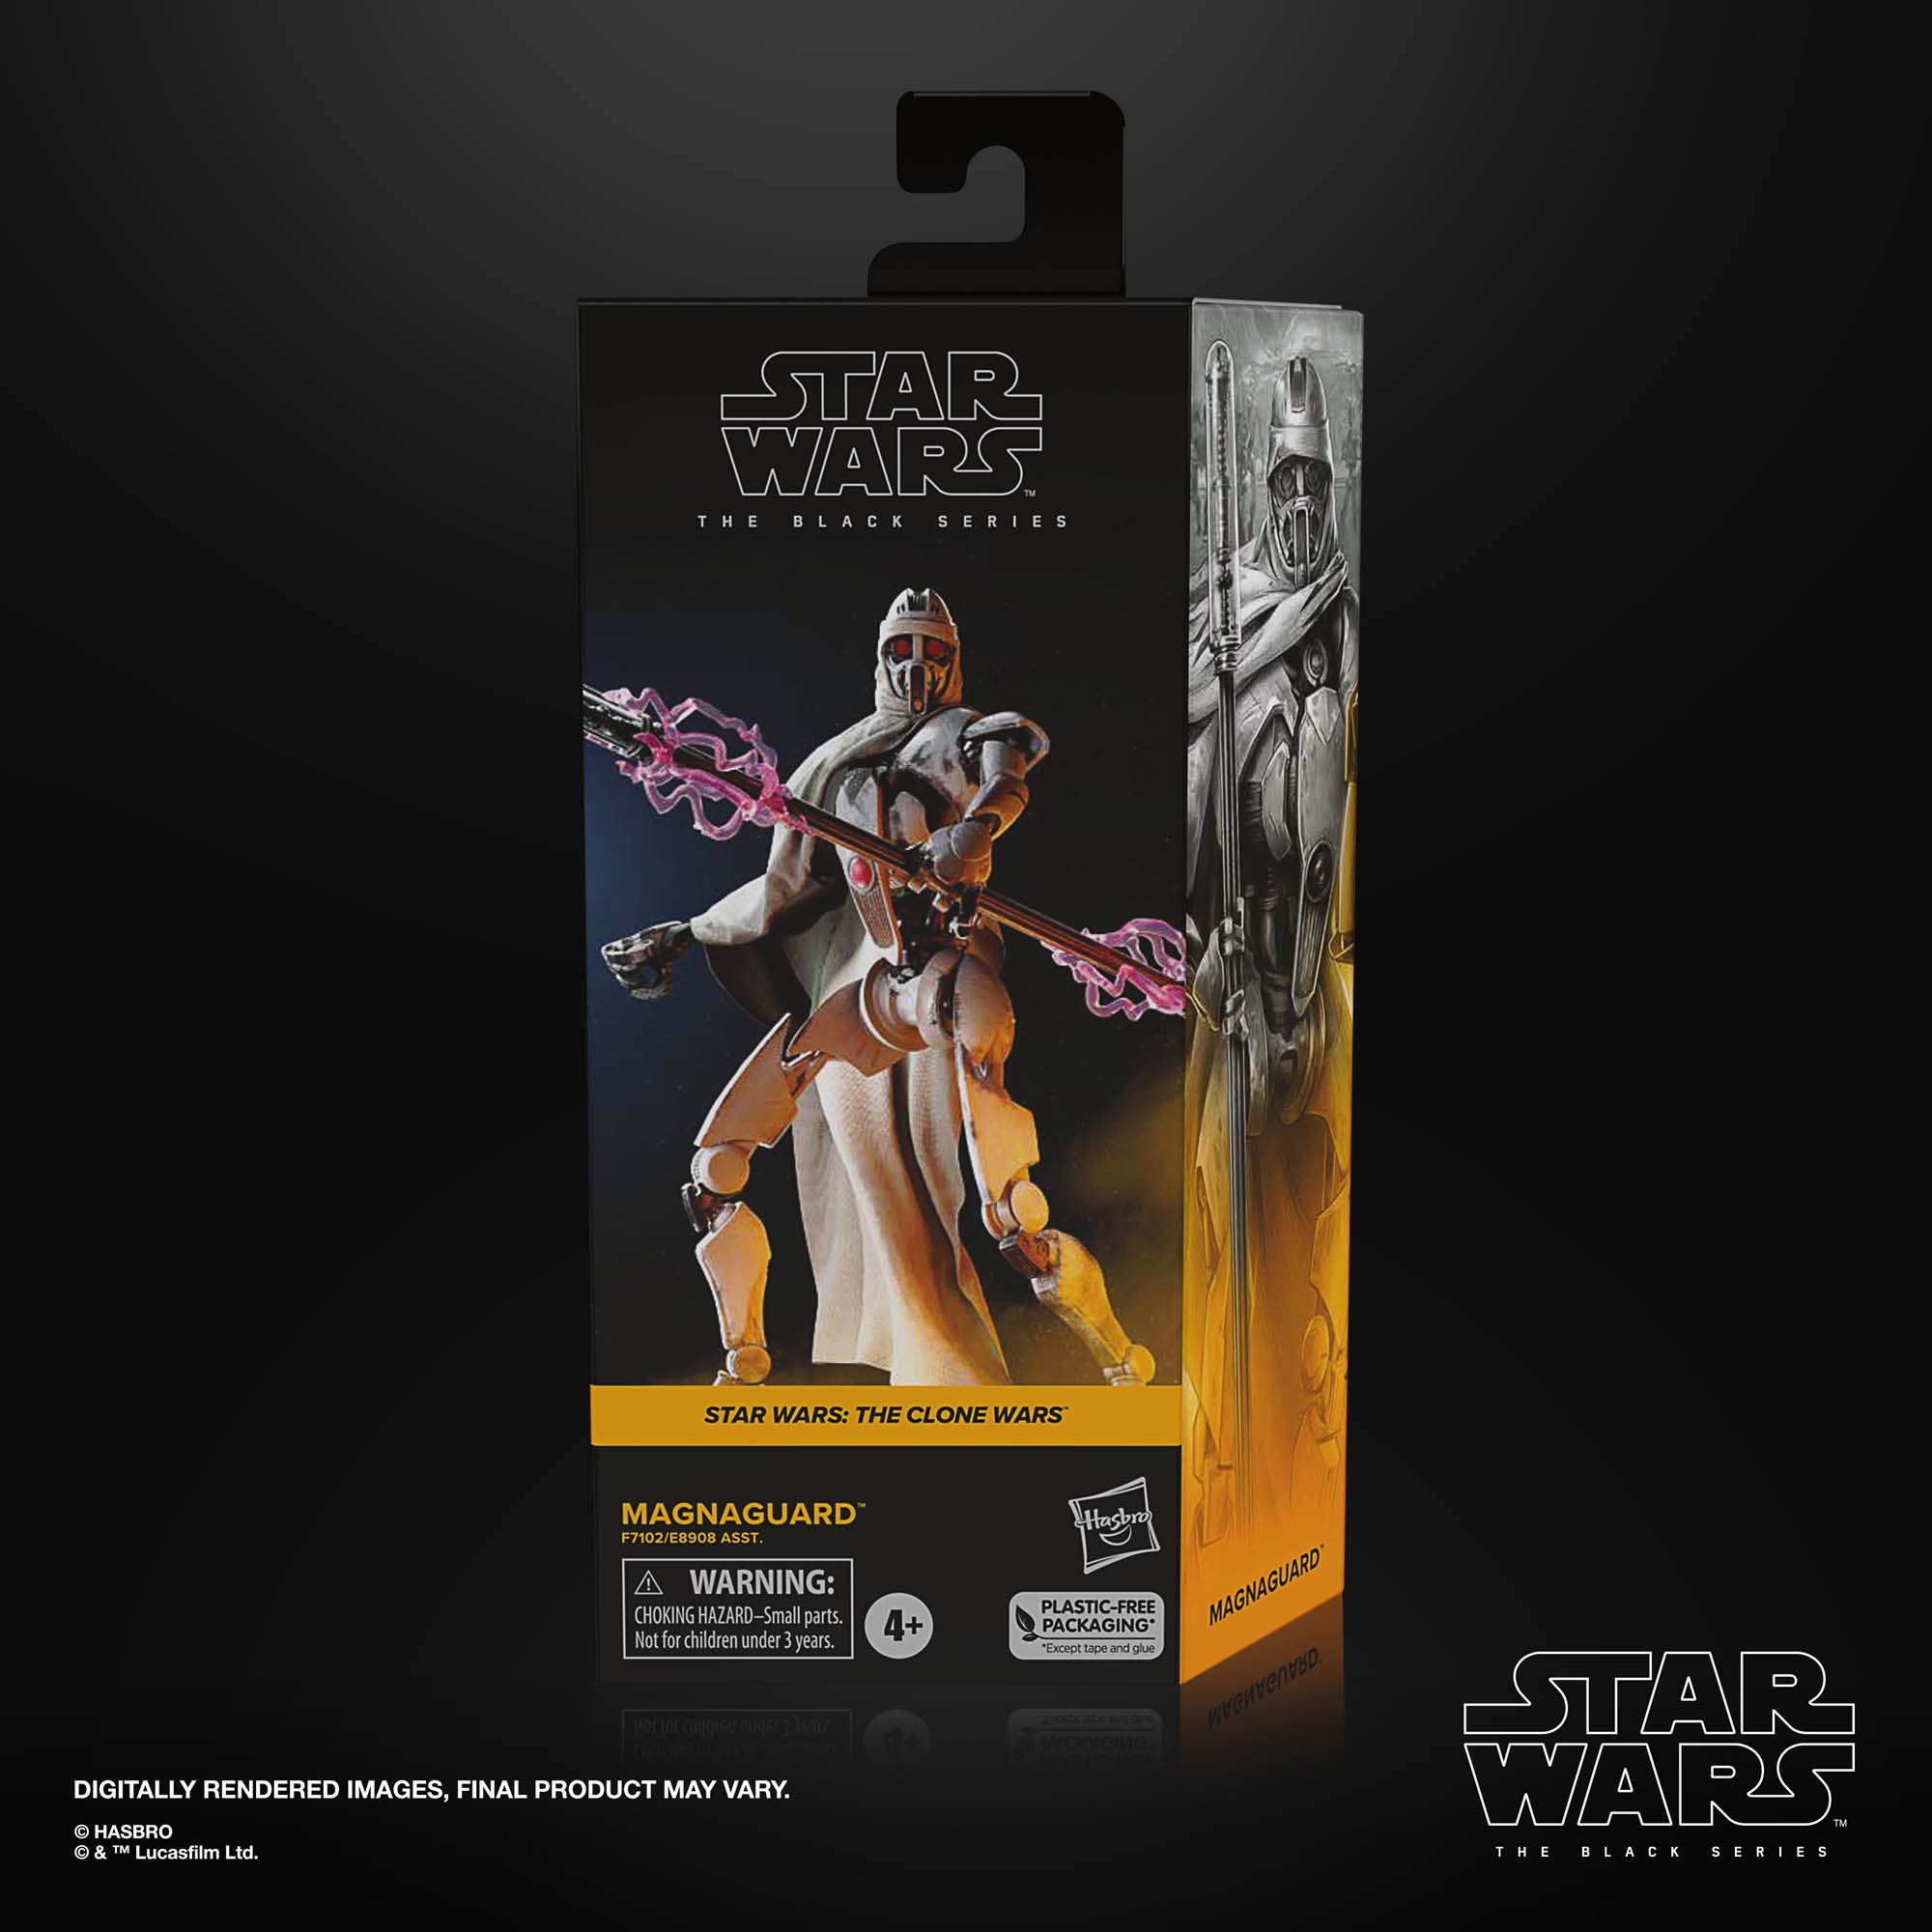 Star Wars The Black Series MagnaGuardStar Wars Action-Figur (15 cm) F71025X0 5010996136756